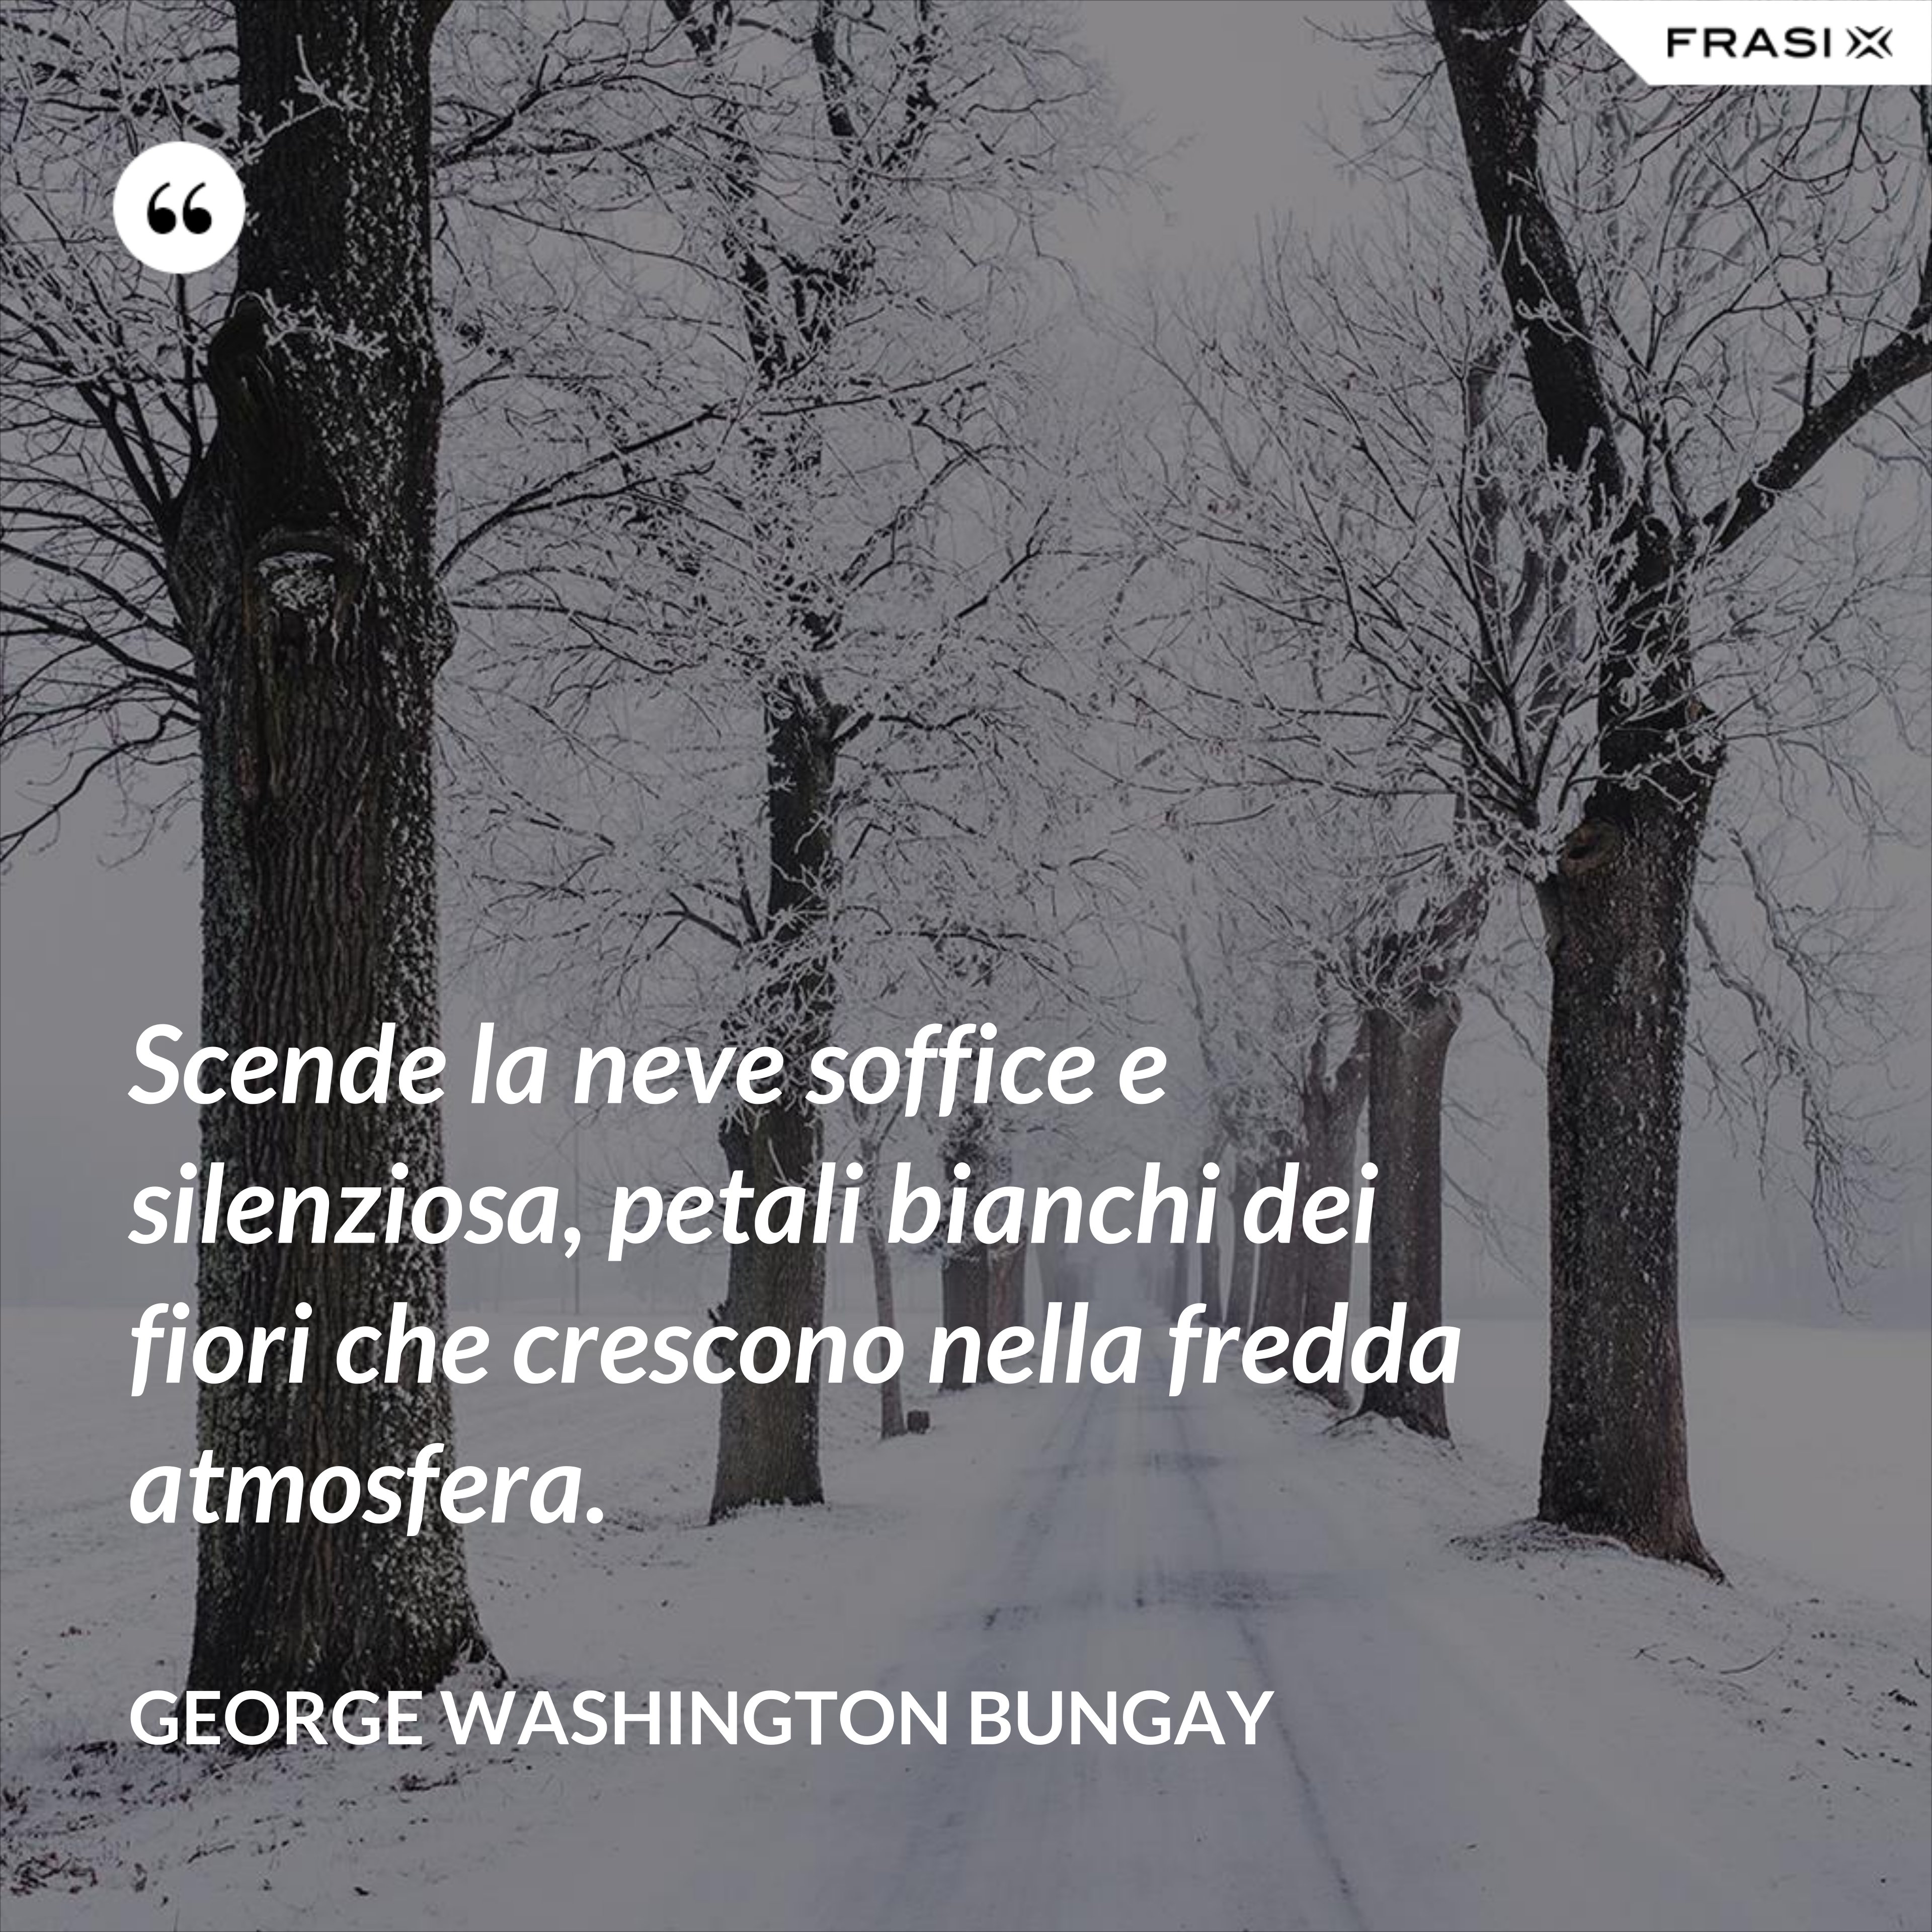 Scende la neve soffice e silenziosa, petali bianchi dei fiori che crescono nella fredda atmosfera. - George Washington Bungay